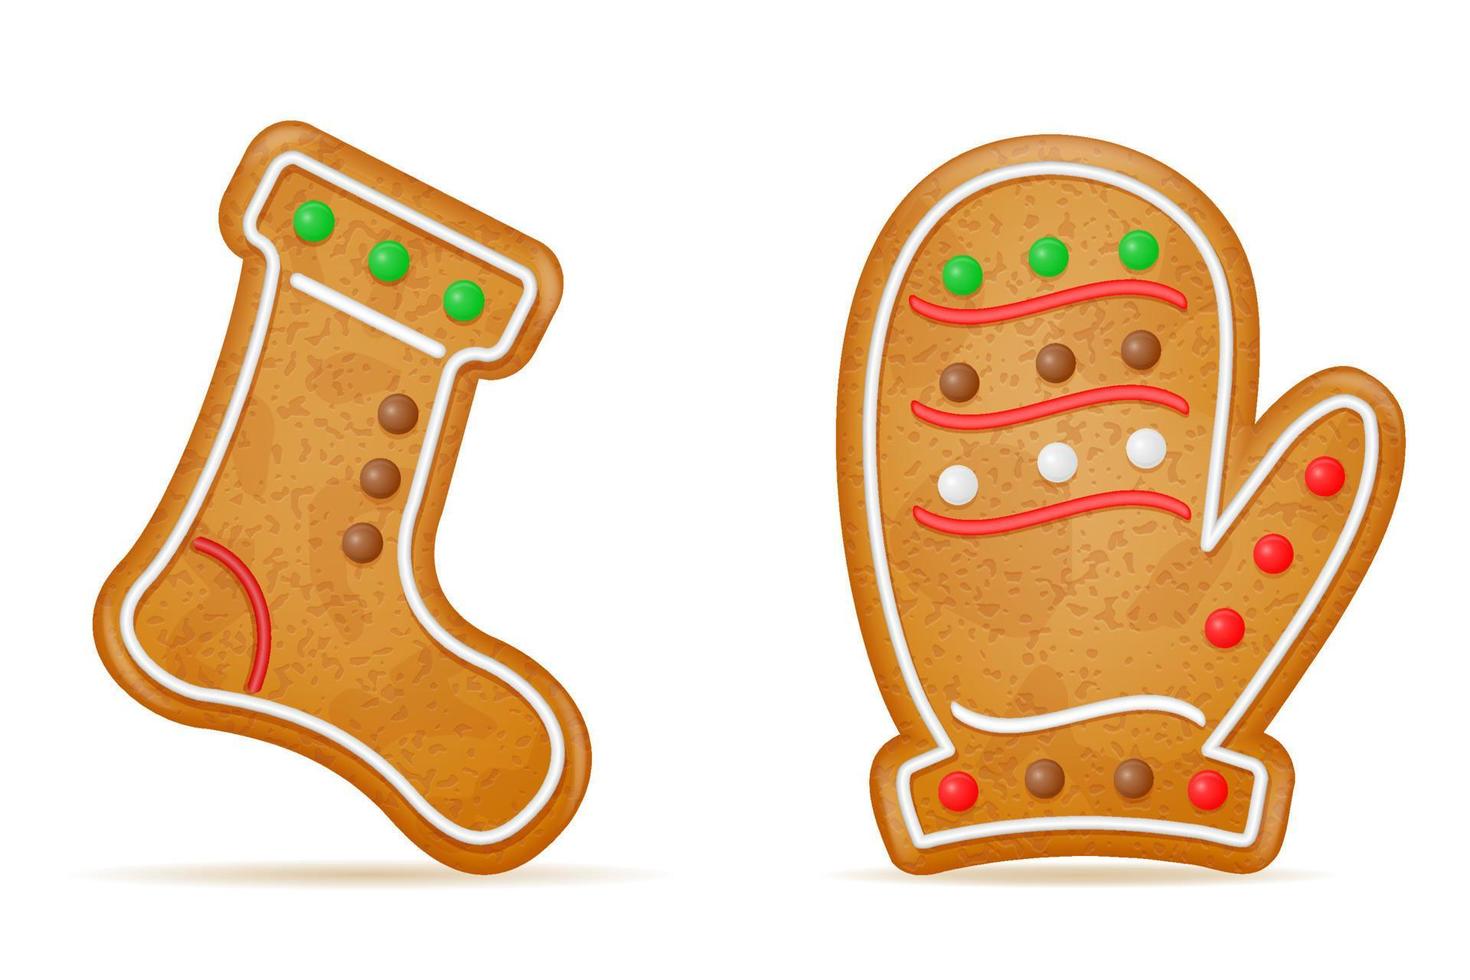 Weihnachtslebkuchenplätzchen für Feiertagsfeier-Vektorillustration des neuen Jahres lokalisiert auf weißem Hintergrund vektor